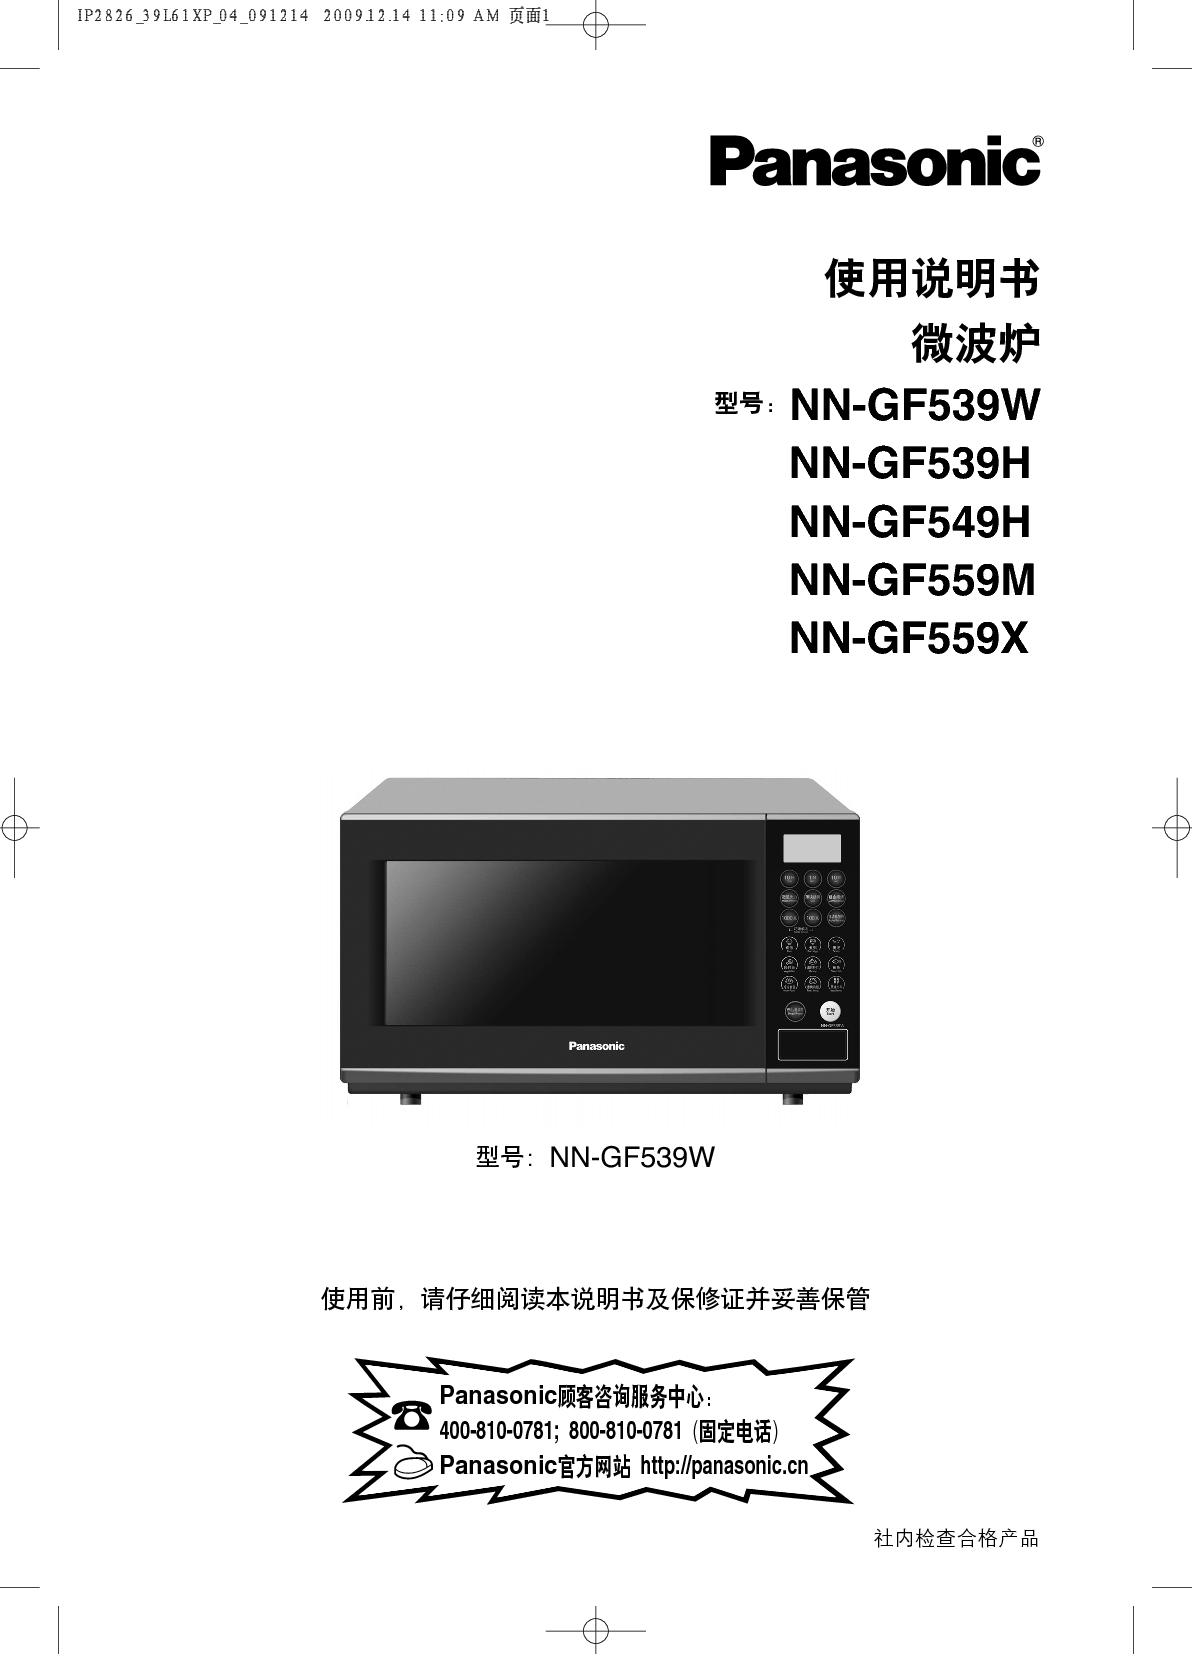 松下 Panasonic NN-GF539H 说明书 封面